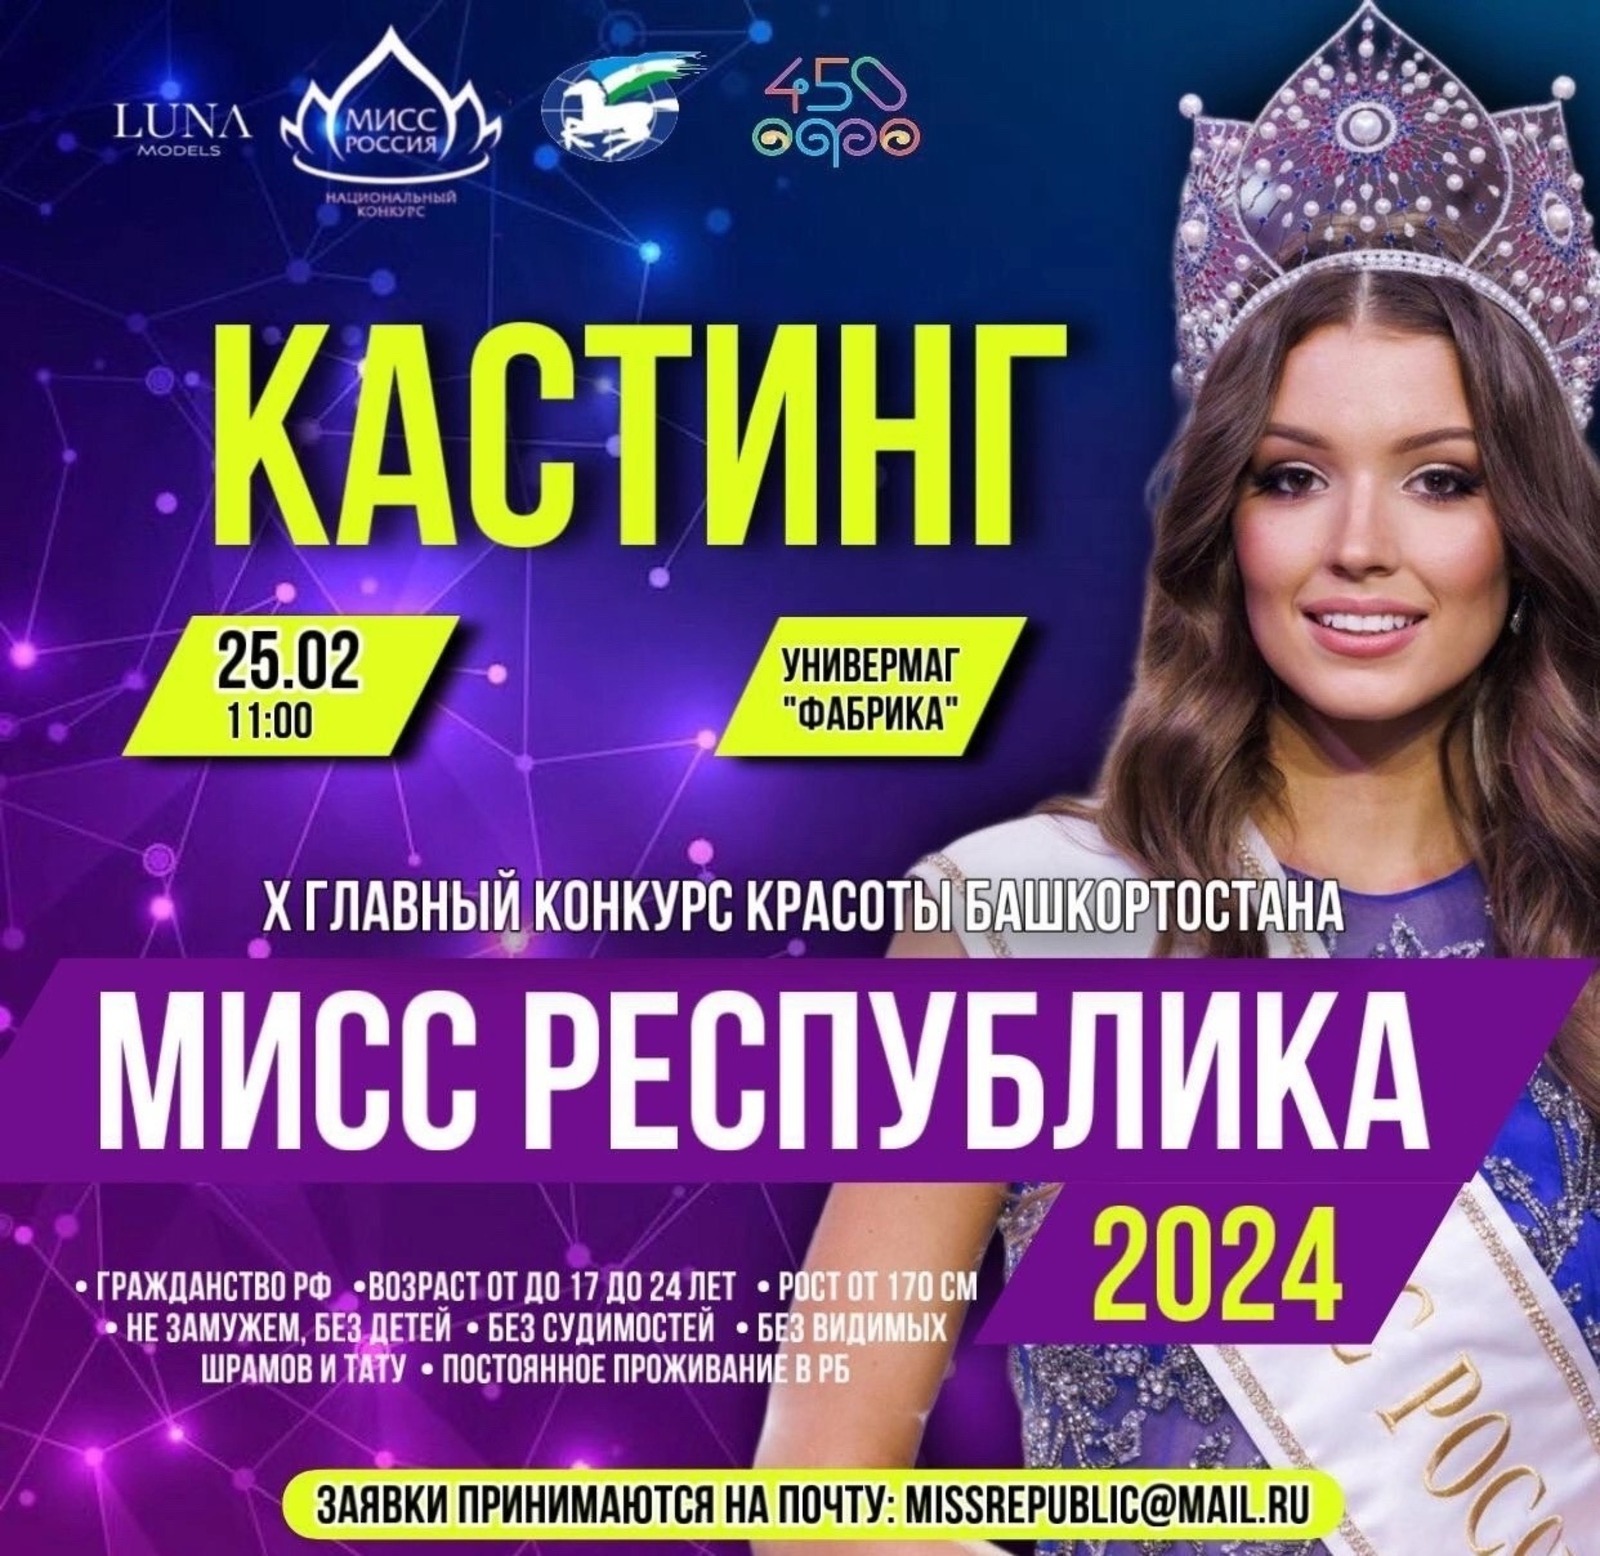 В Уфе состоится отборочный тур на конкурс красоты «Мисс Республика-2024»